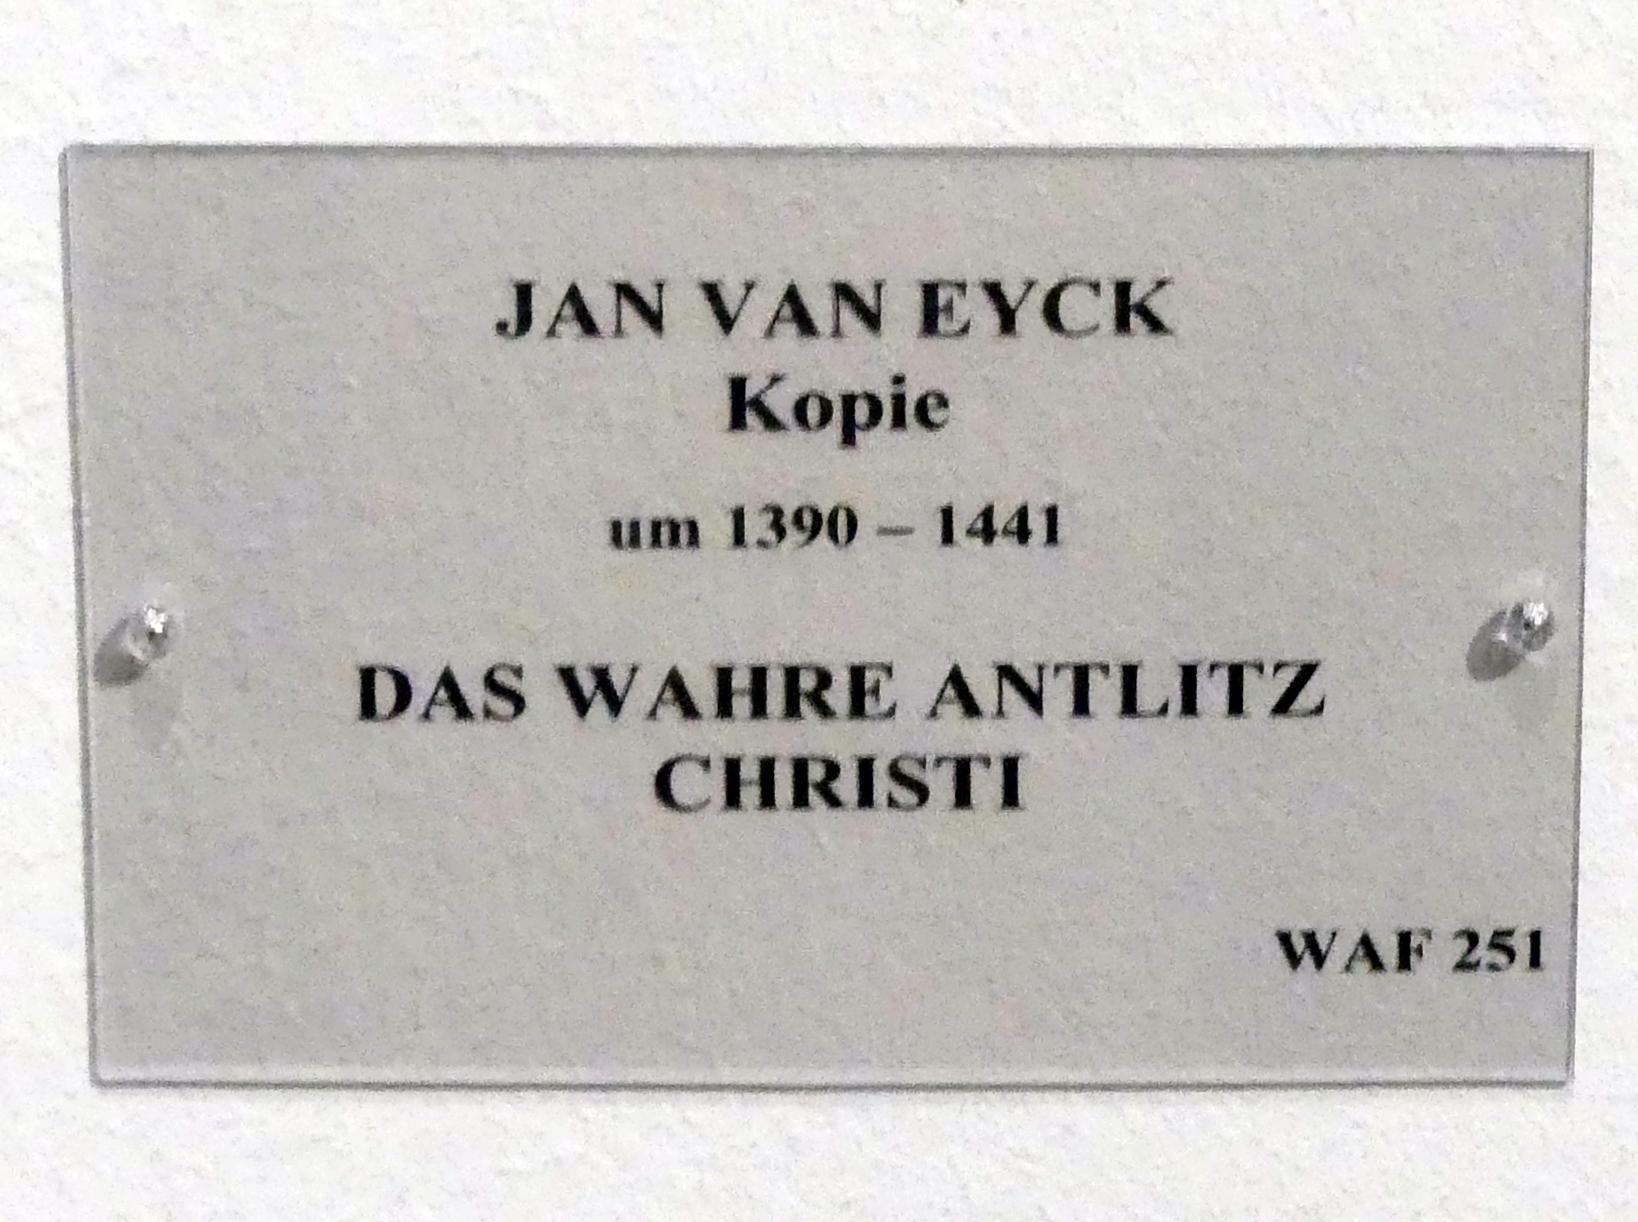 Jan van Eyck (Kopie) (1500), Das Wahre Antlitz Christi, München, Alte Pinakothek, Erdgeschoss Saal IIc, um 1500, Bild 2/2